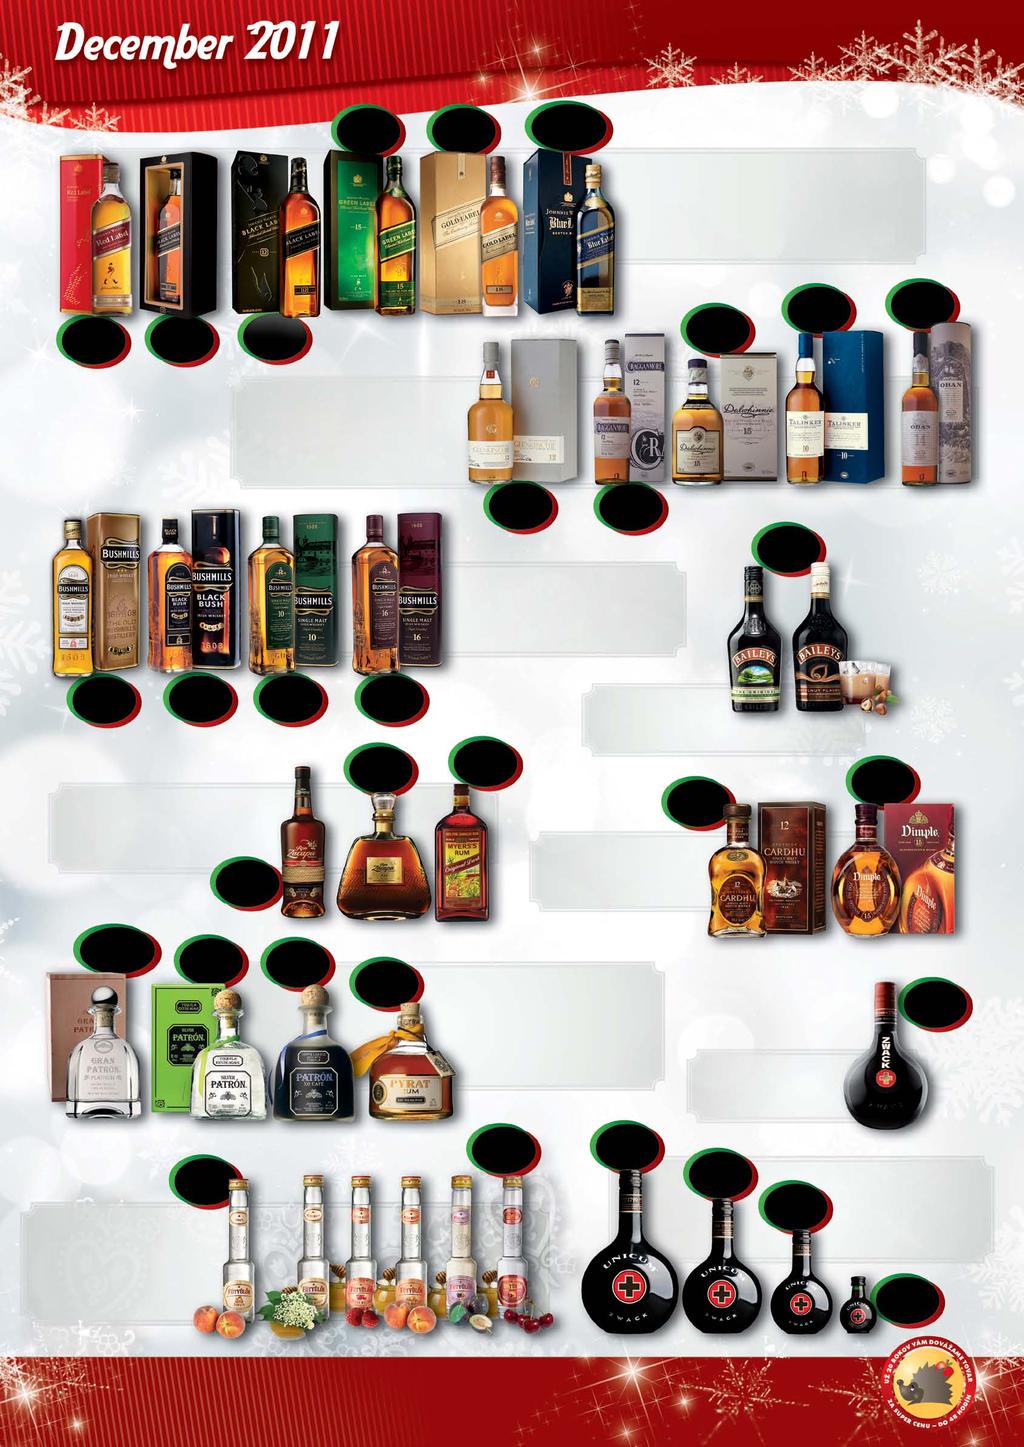 32, 110 47, 781 148, 311 *38, 532 *57, 337 *177, 973 Whisky JOHNNIE WALKER Red Label 40% 0,7l v plechu Whisky JOHNNIE WALKER Black Label 40% 0,7l limited edition Whisky JOHNNIE WALKER Black Label 40%